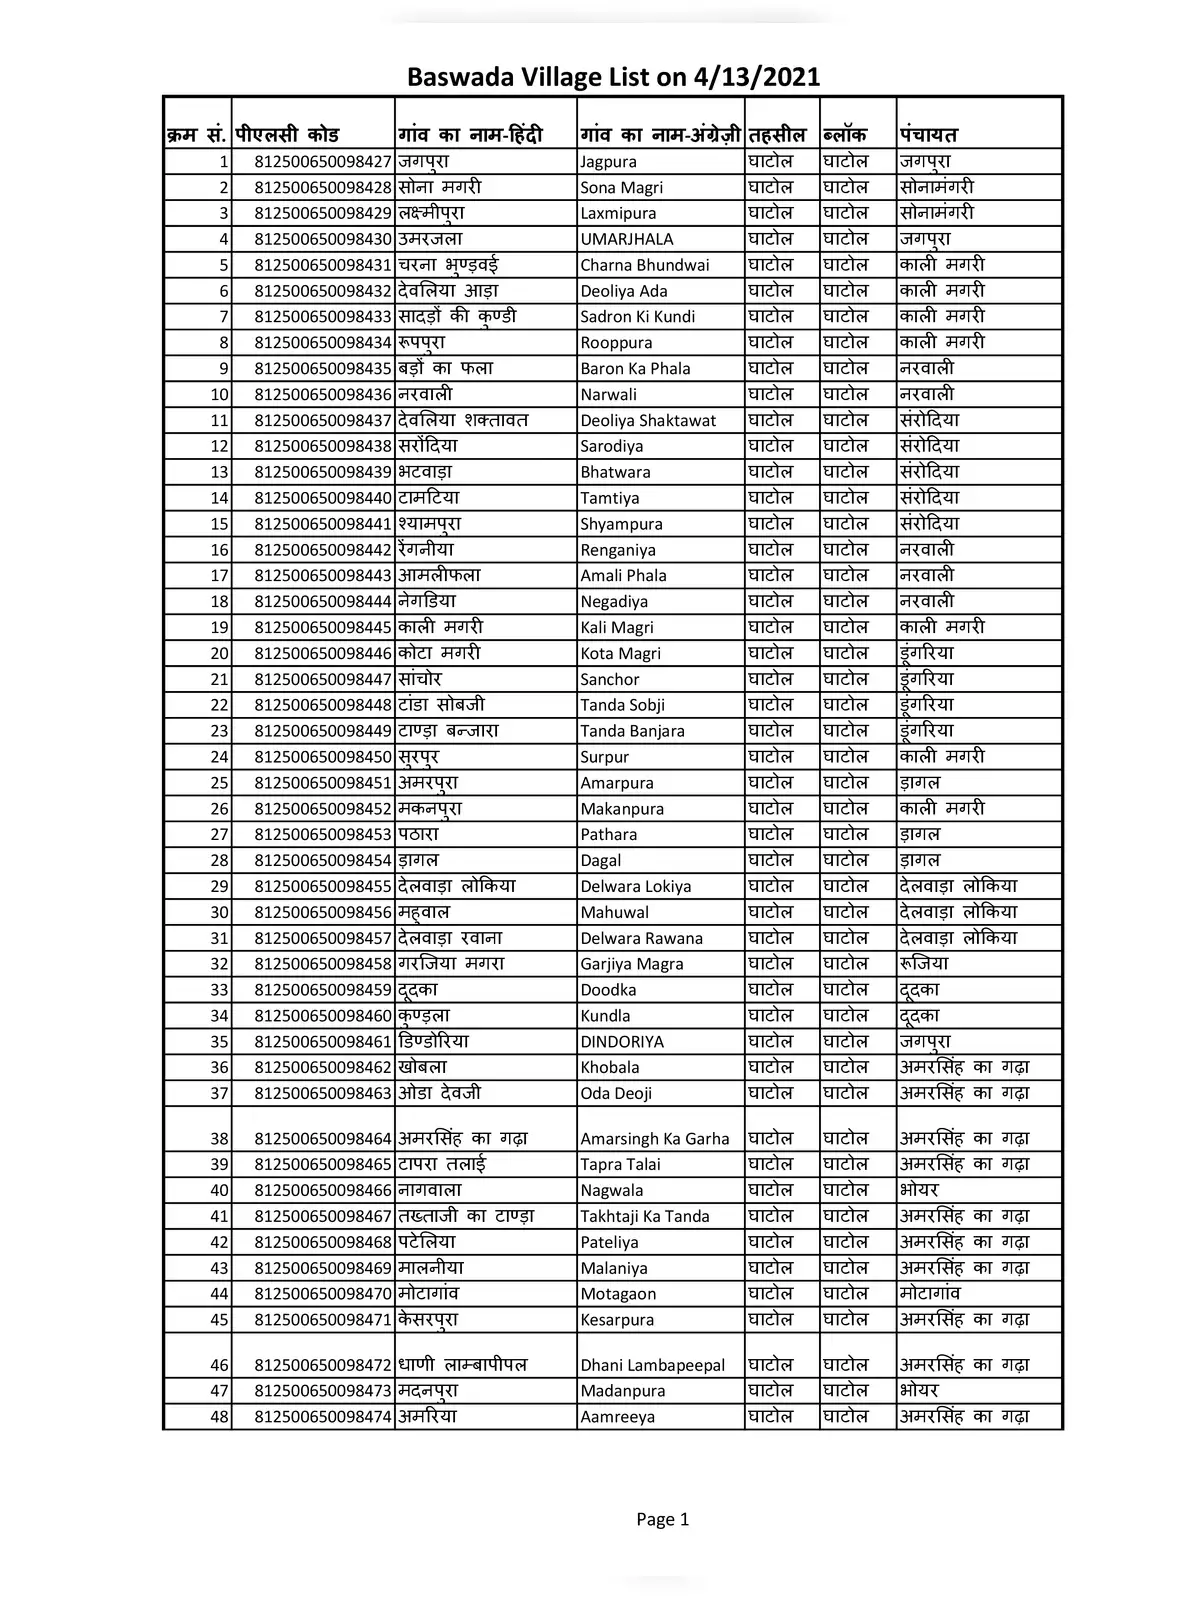 Baswada District Villages Names List